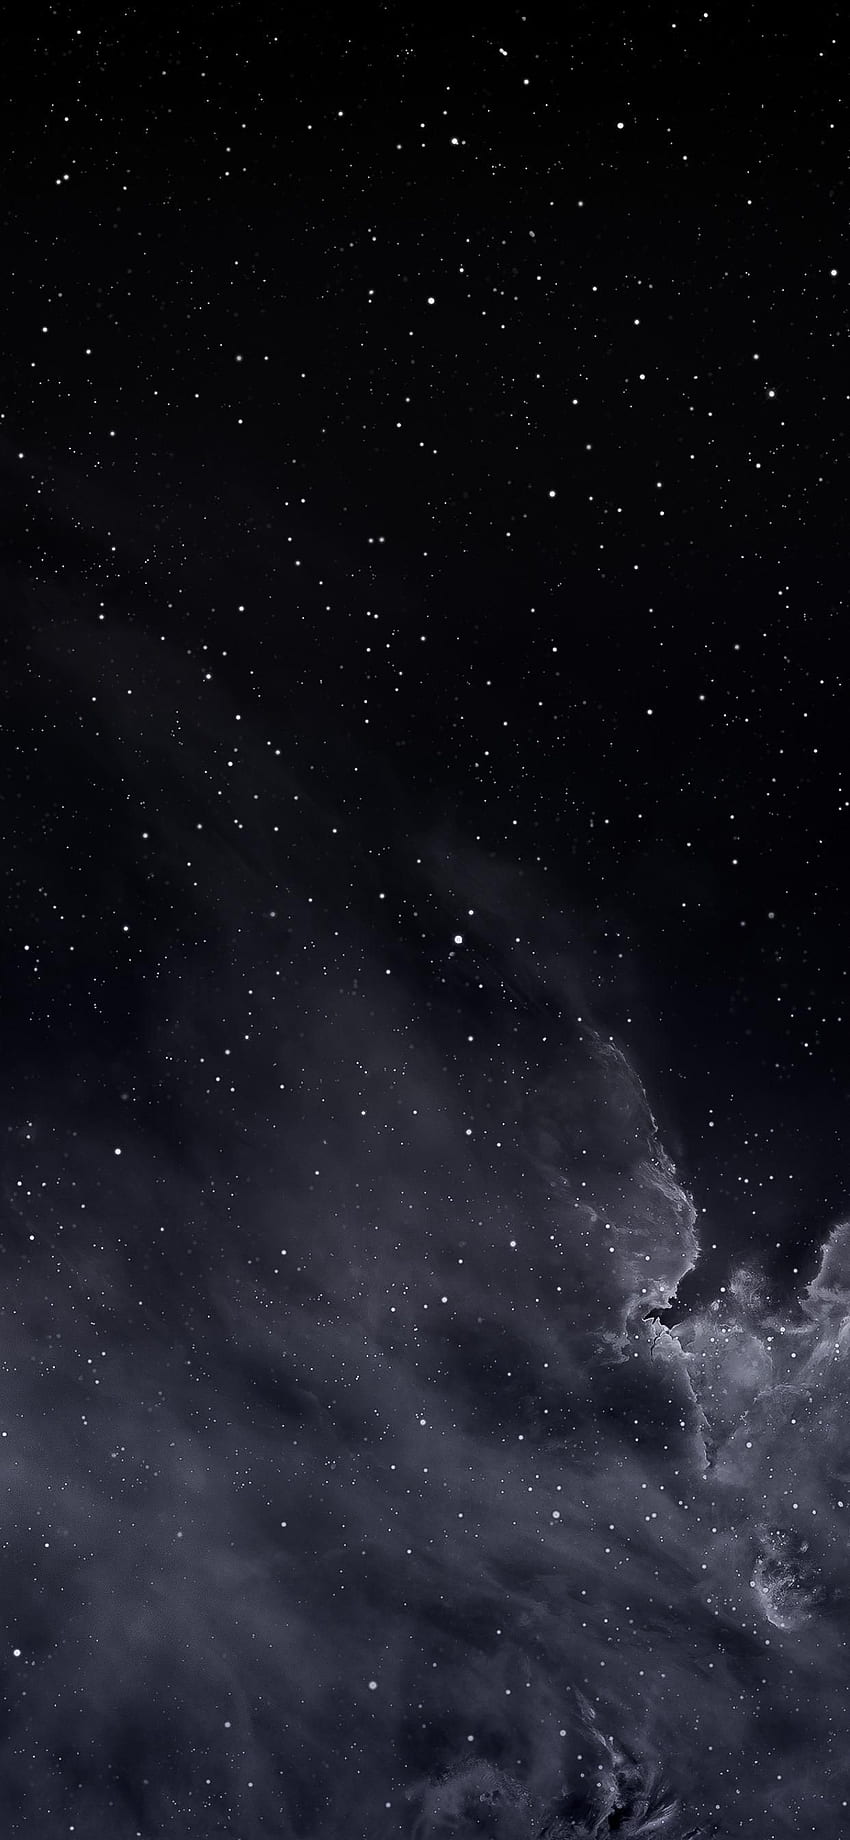 Sternennacht im Jahr 2020. Blaues iPhone, graues iPhone, dunkles iPhone HD-Handy-Hintergrundbild